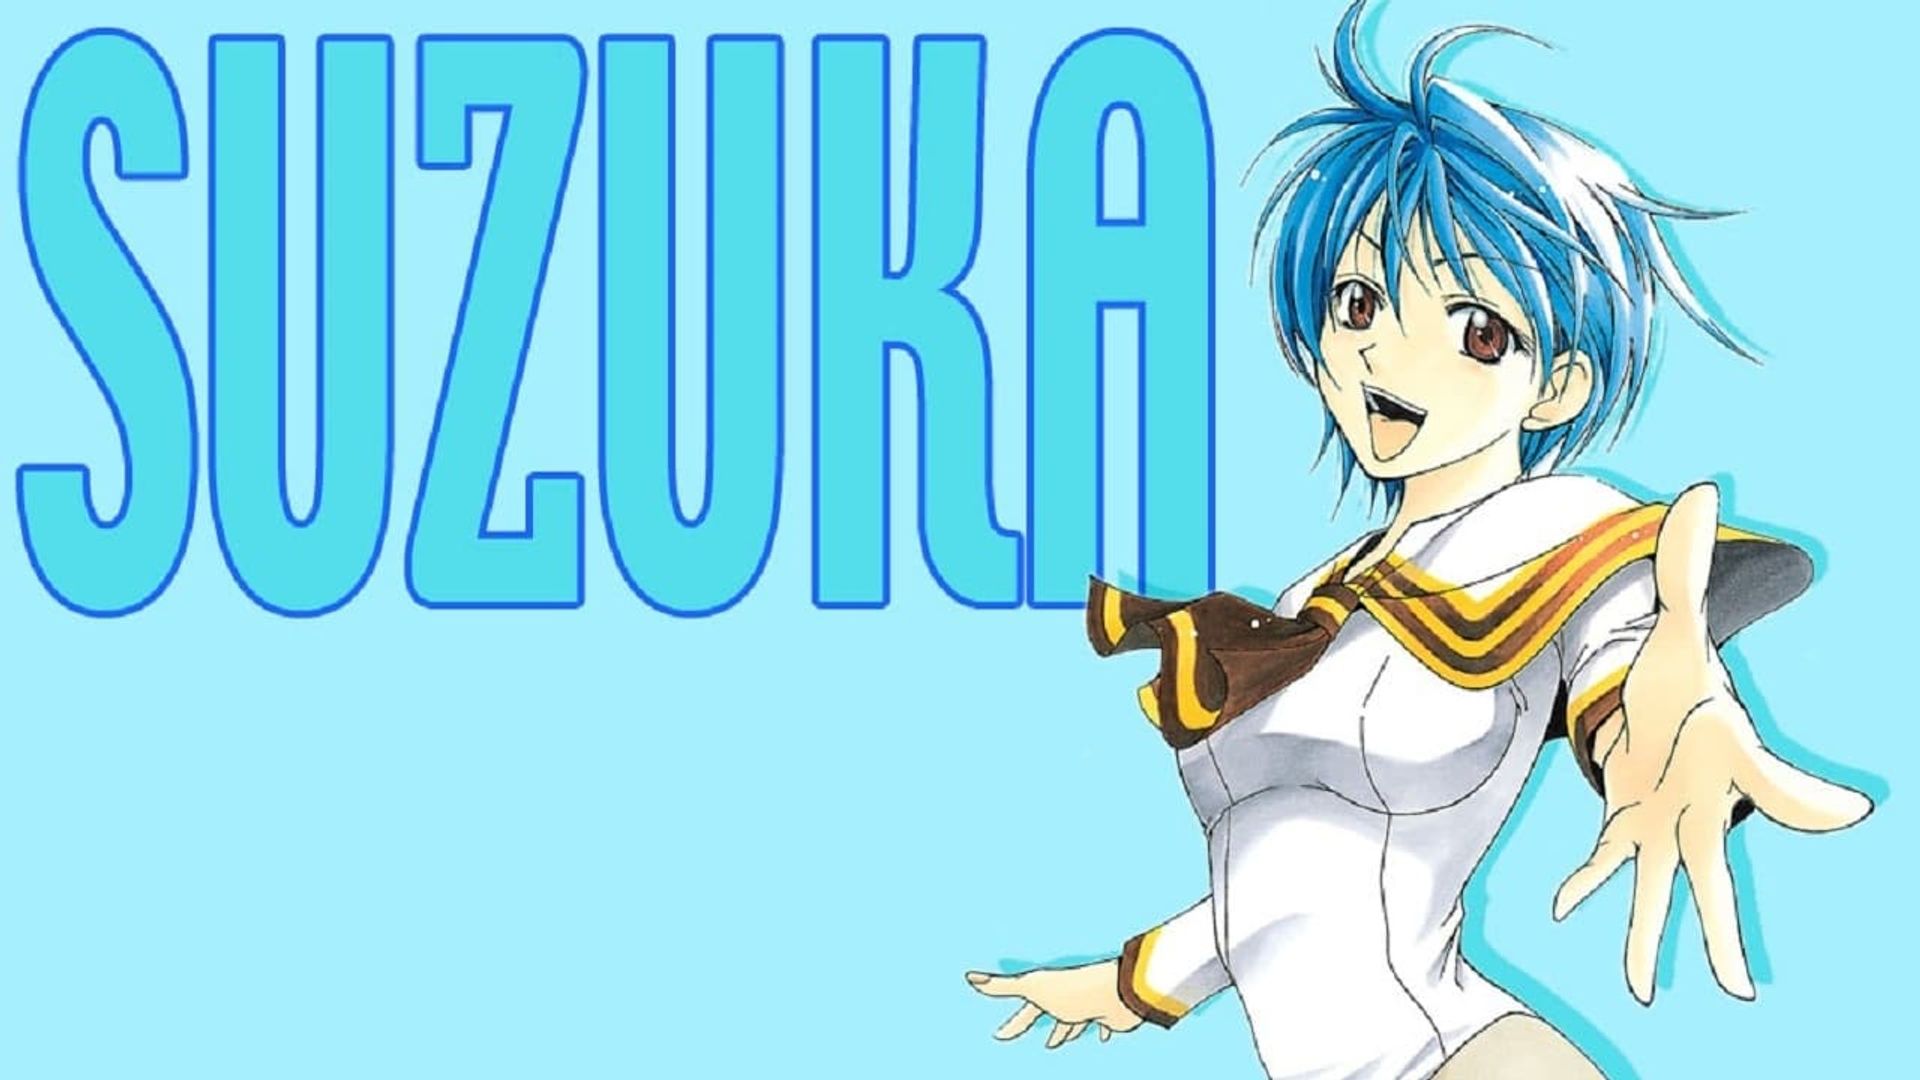 Suzuka background